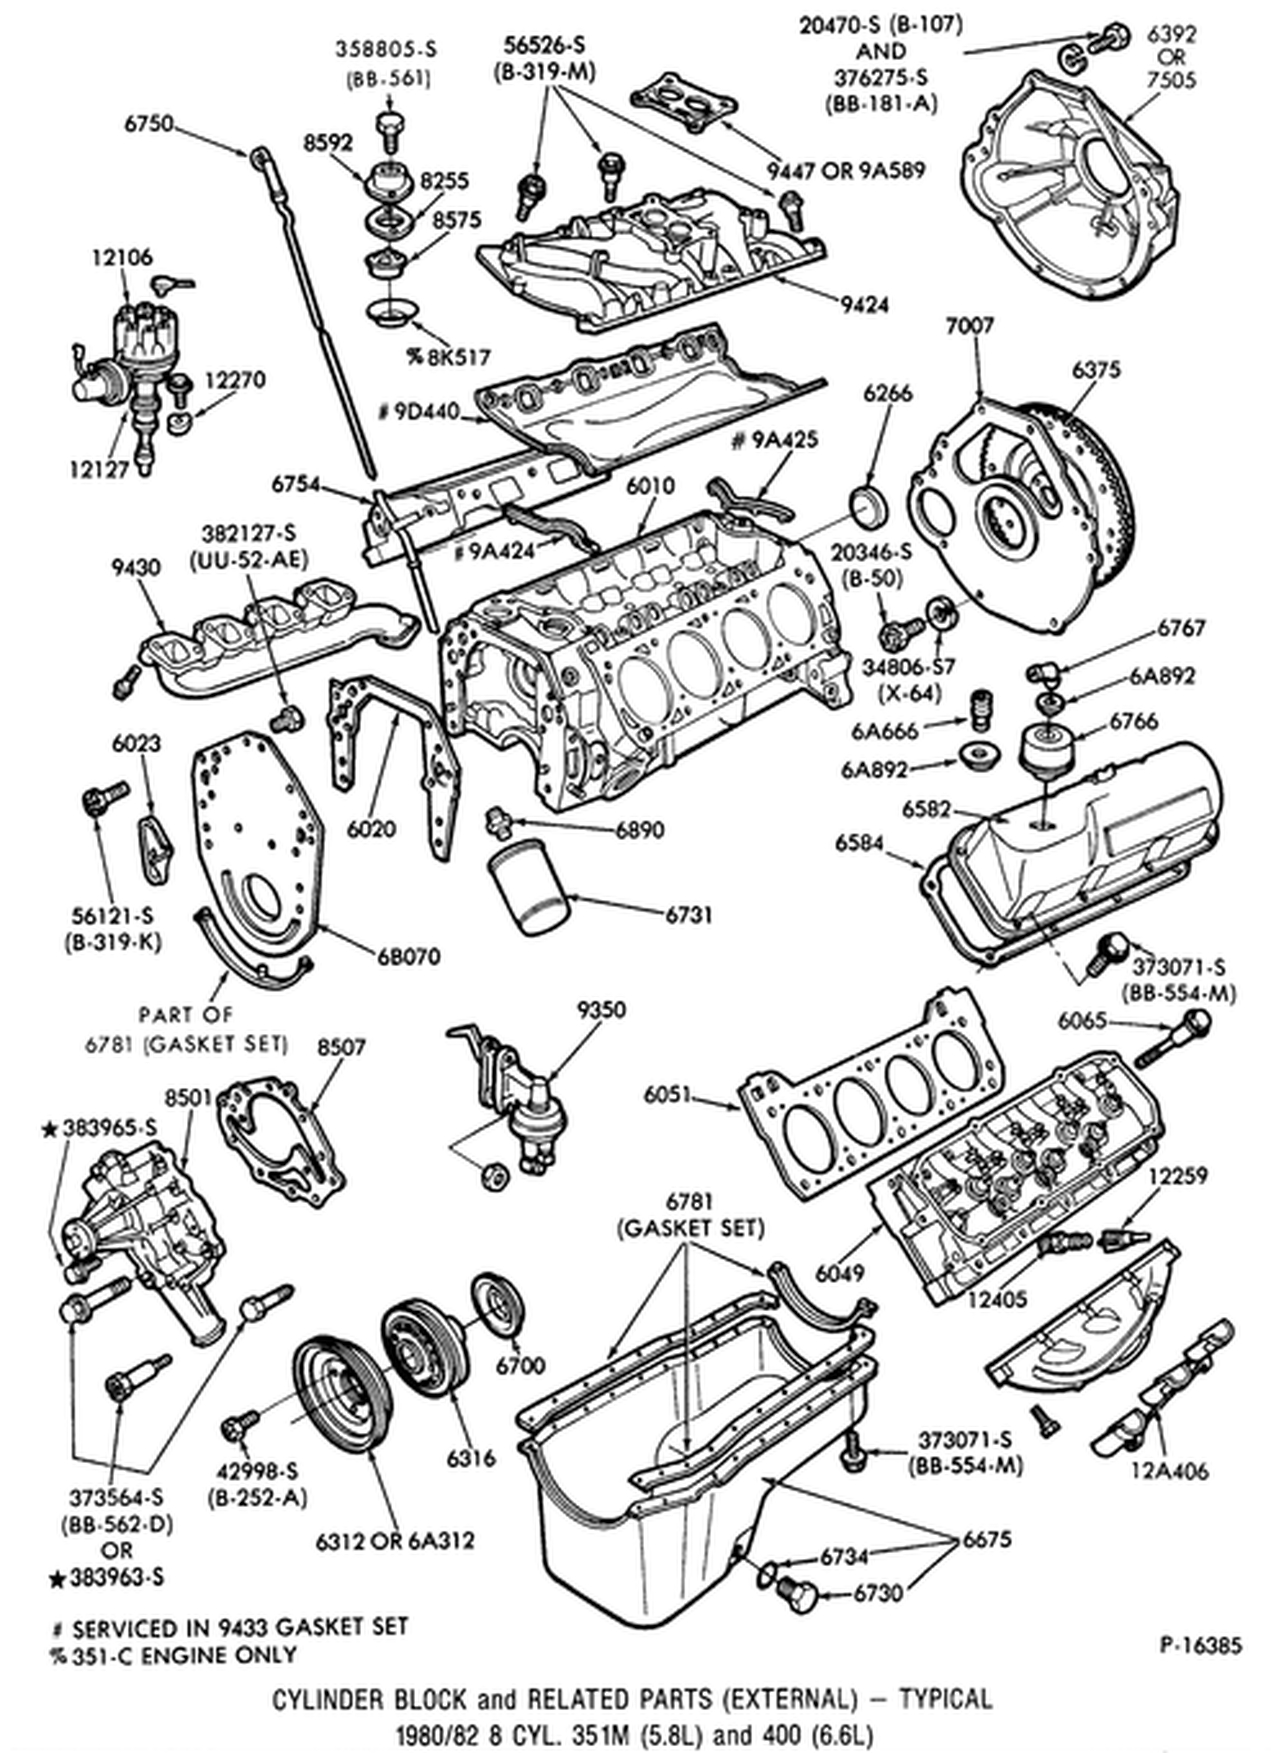 1977 351 Cleveland Engine Diagram - Dexter Axle Wiring